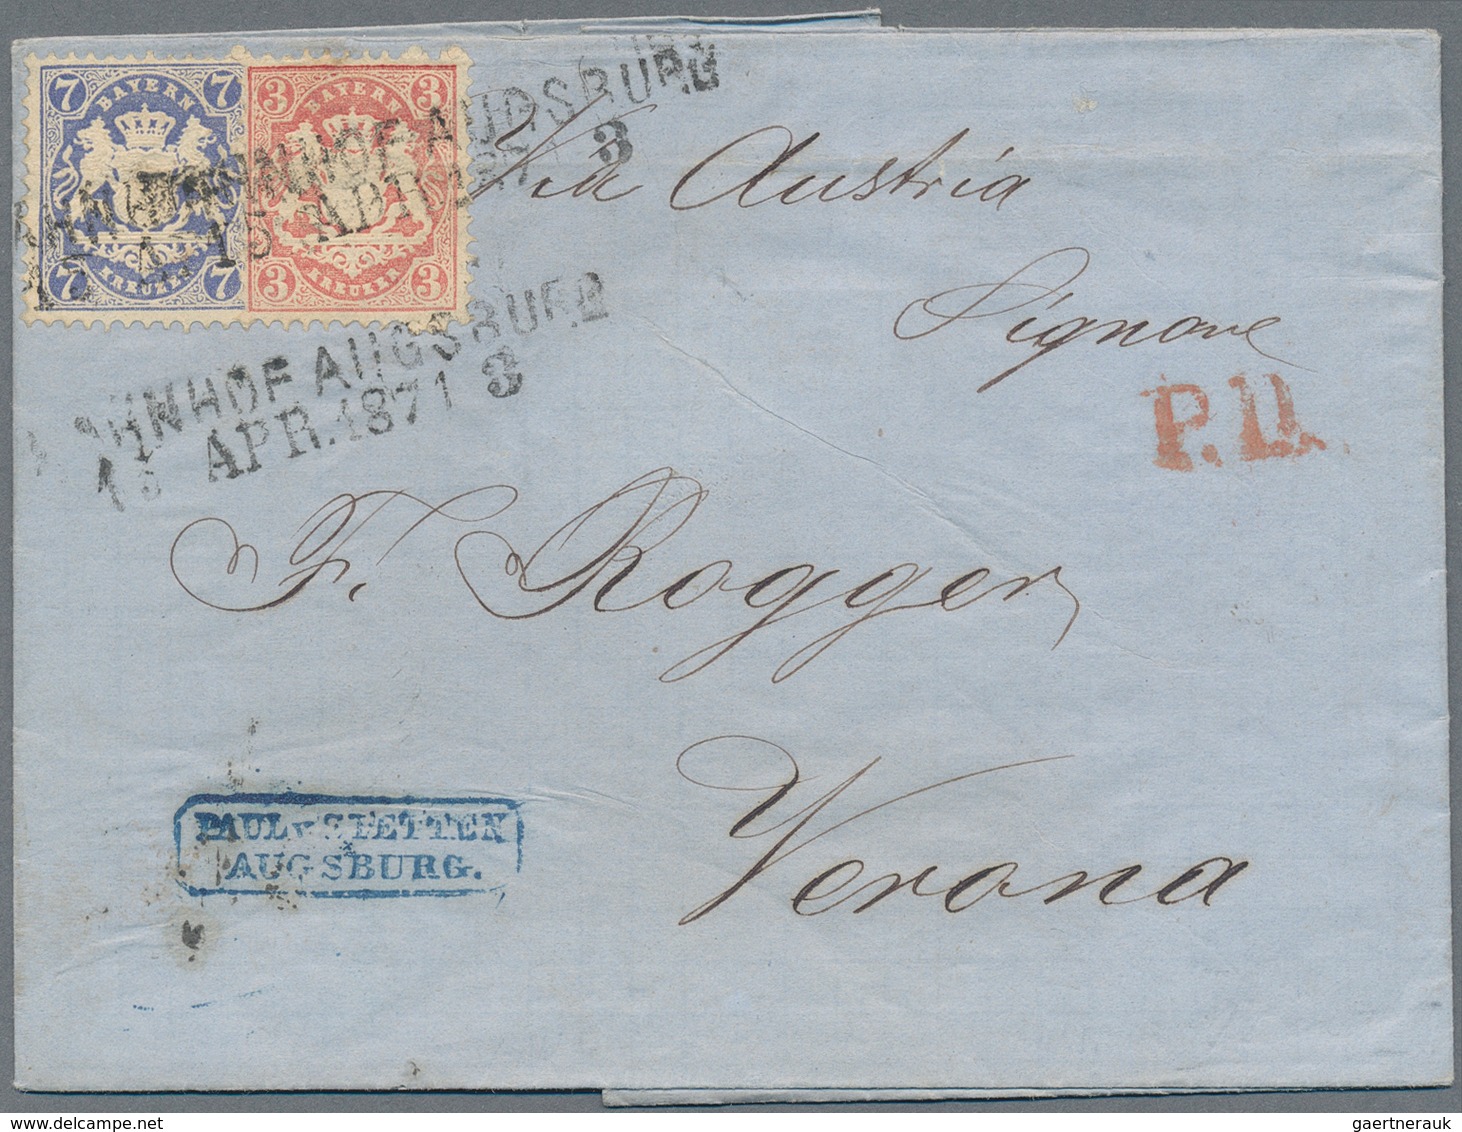 Bayern - Marken und Briefe: 1853/1870 (ca.), Partie mit rund 150 Belegen, dabei seltene Farb- und Bu